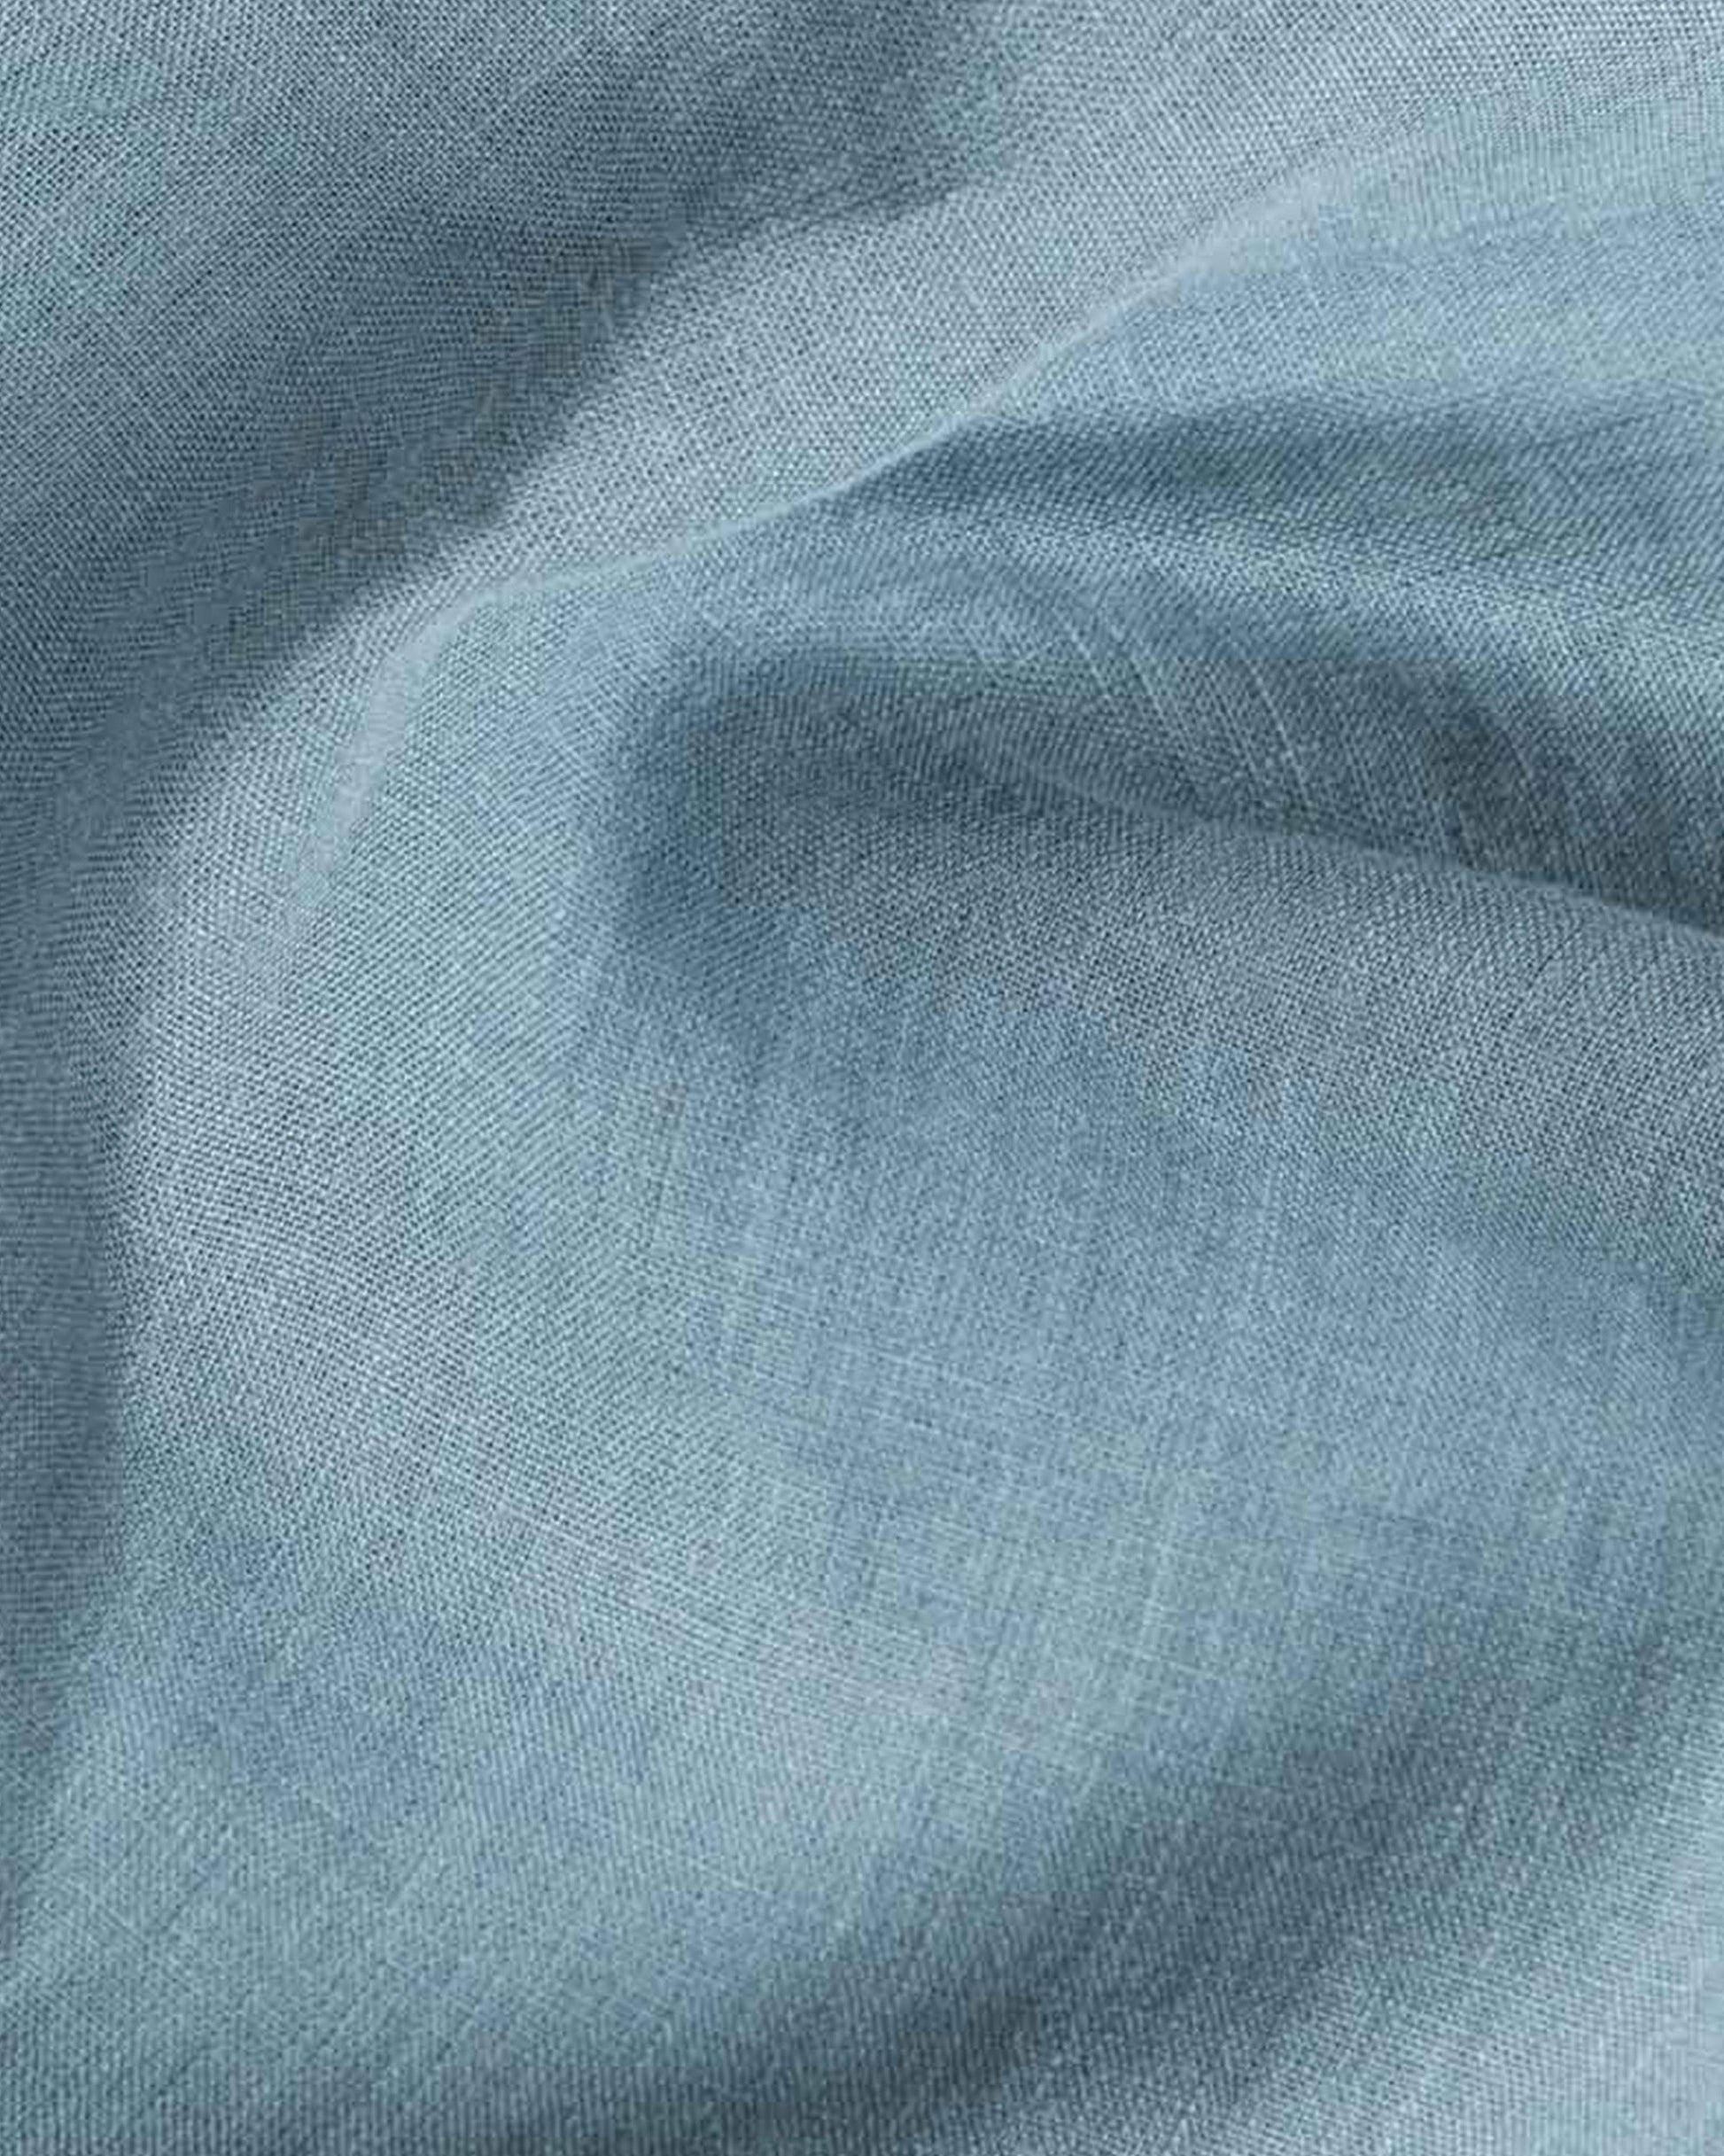 Gray blue linen fitted sheet - MagicLinen